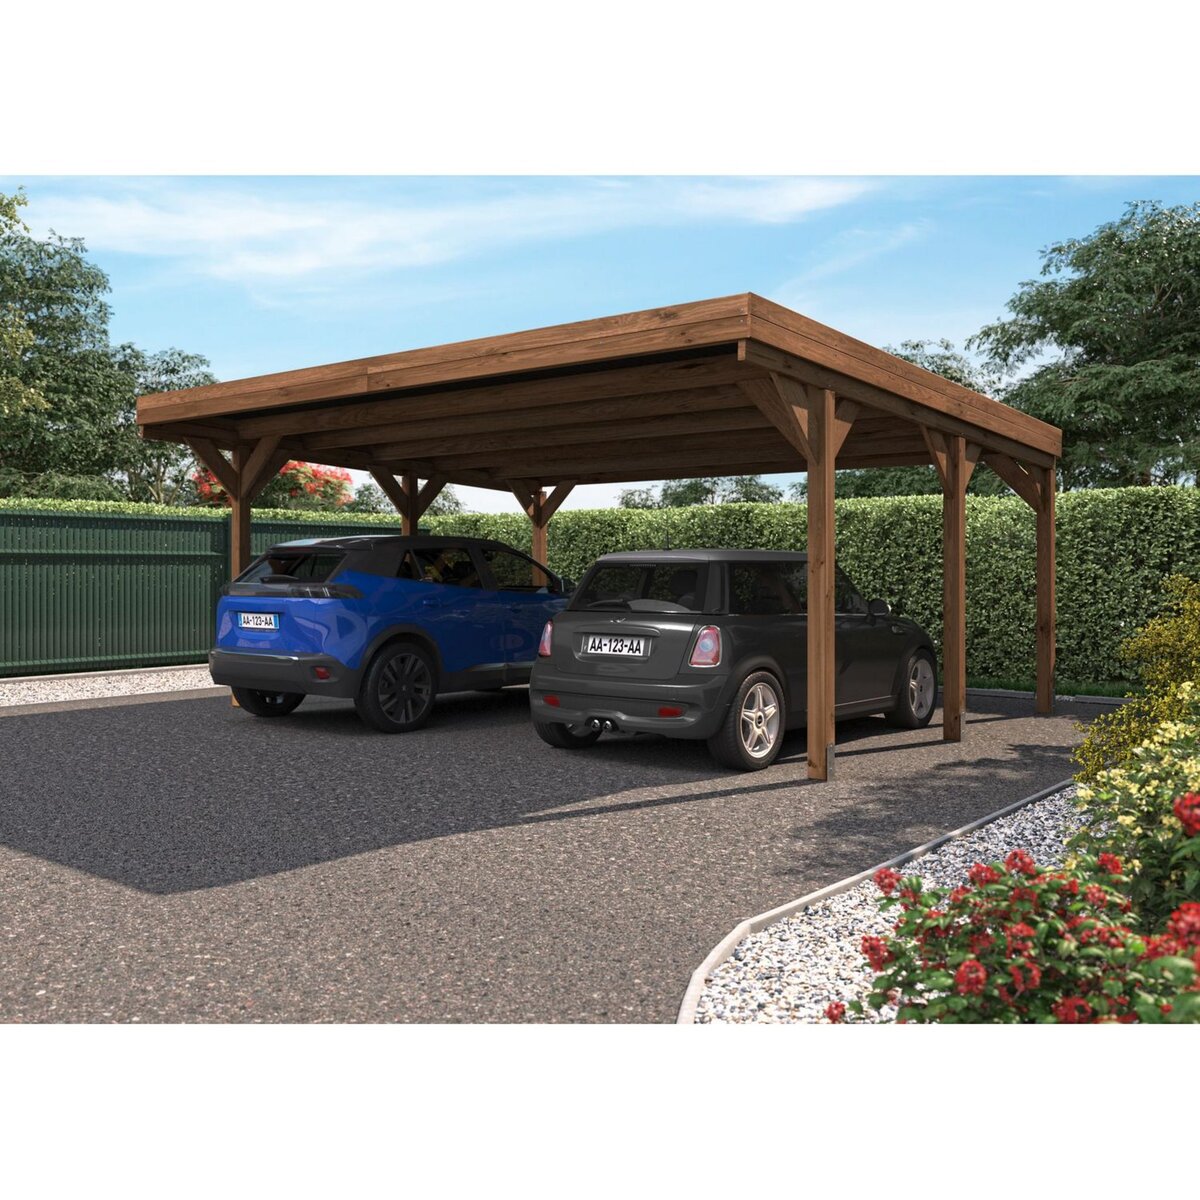 Forest Style Carport toit plat - Bois traité autoclave - 2 voitures - 30,9m² - VICTOR